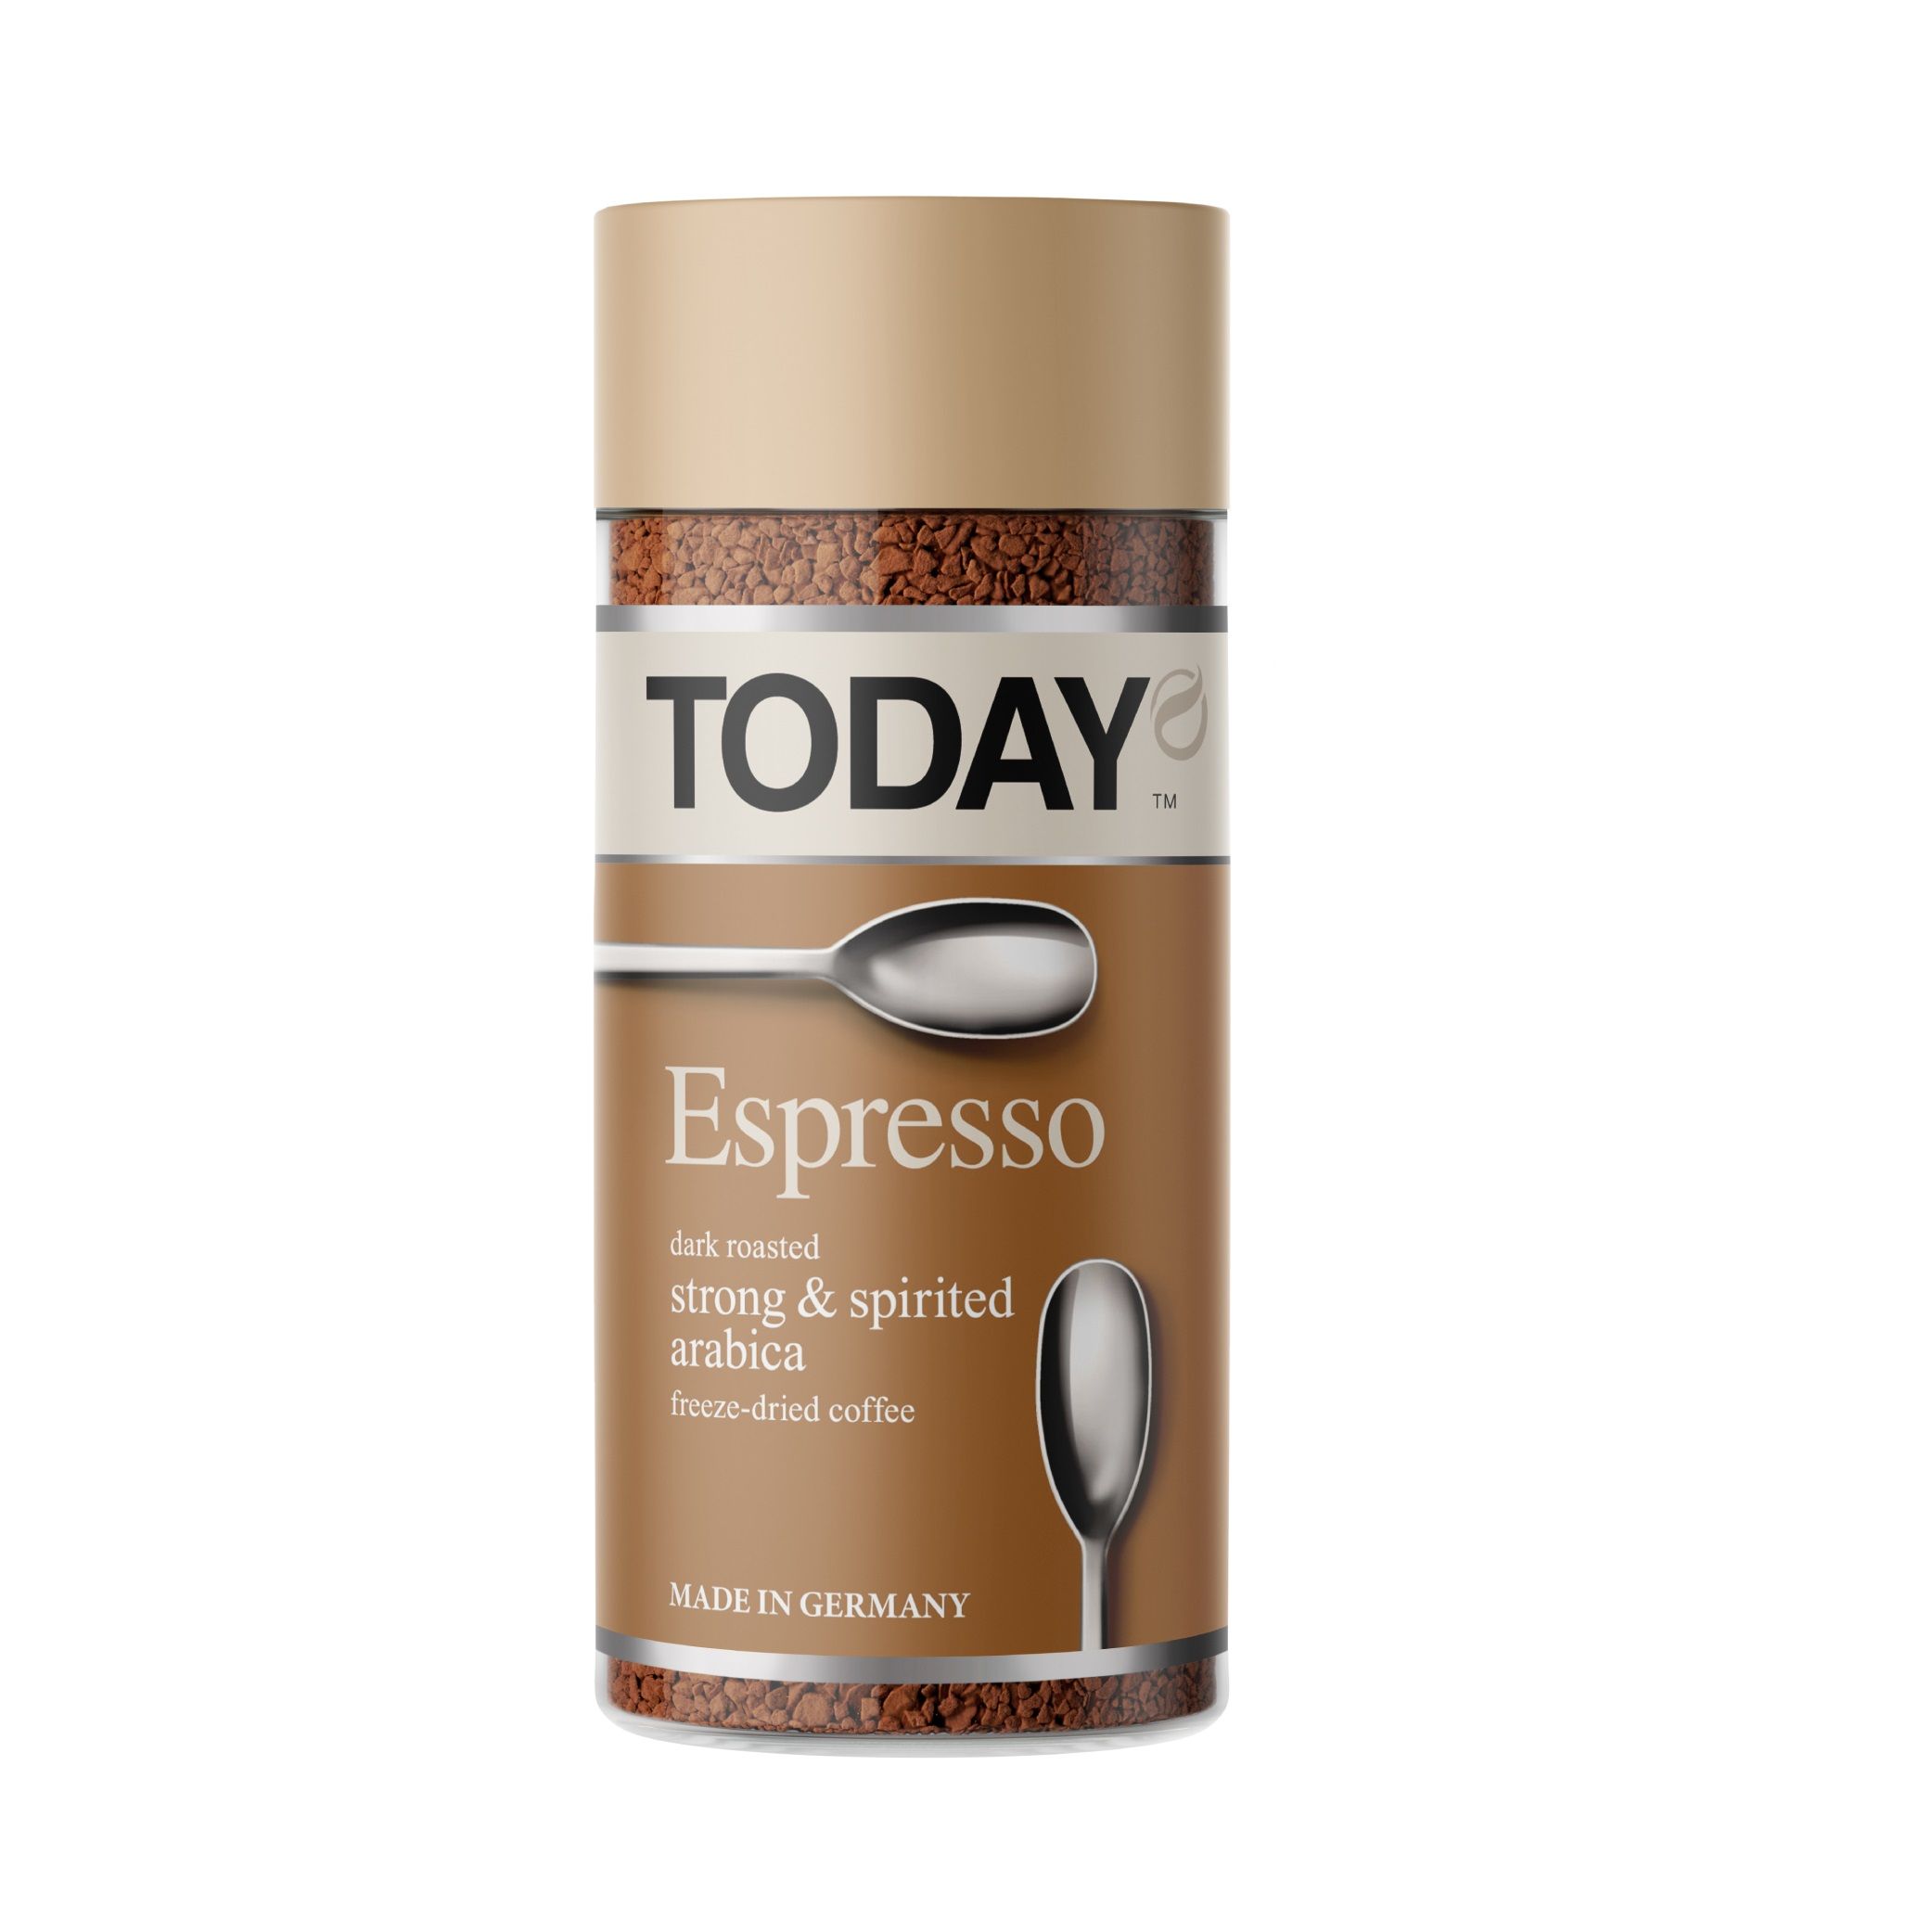 Эспрессо растворимый. Кофе Тудей. Эспрессо кофе. Today Espresso 95г с/б. Кофе Коломбо растворимый 95 г.